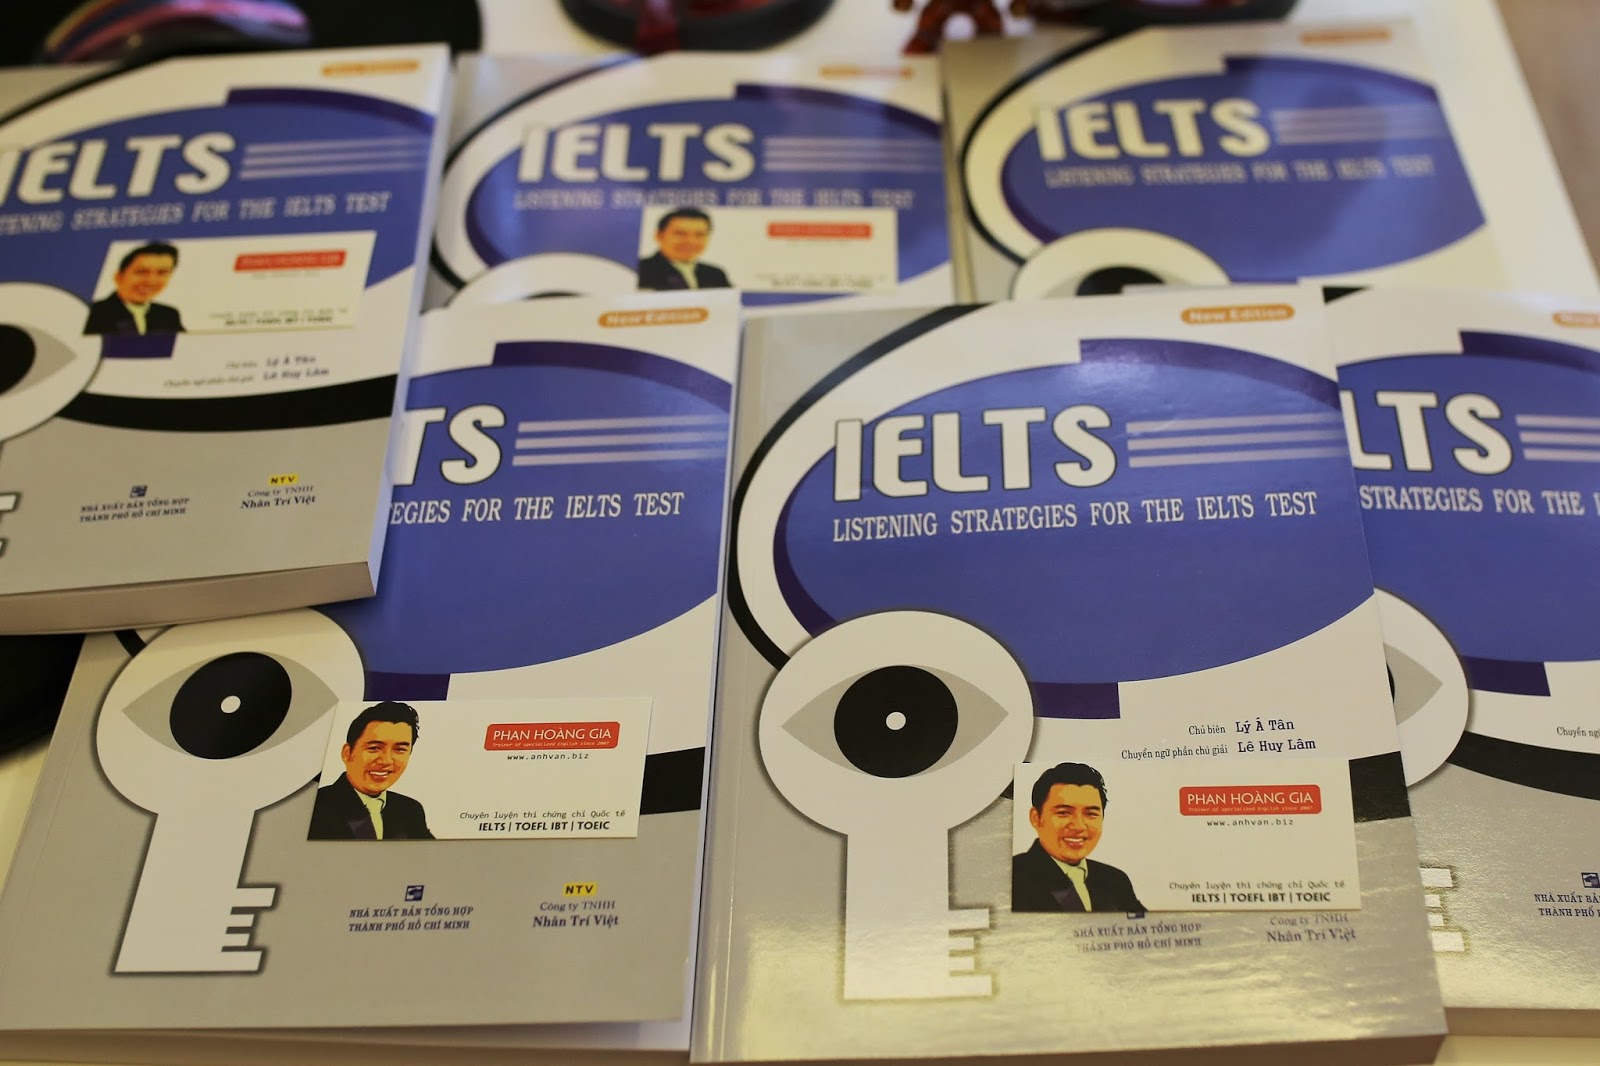 Download bộ sách luyện nghe IELTS kinh điểm từ cơ bản đến nâng cao (full pdf+audio) - Ảnh 3